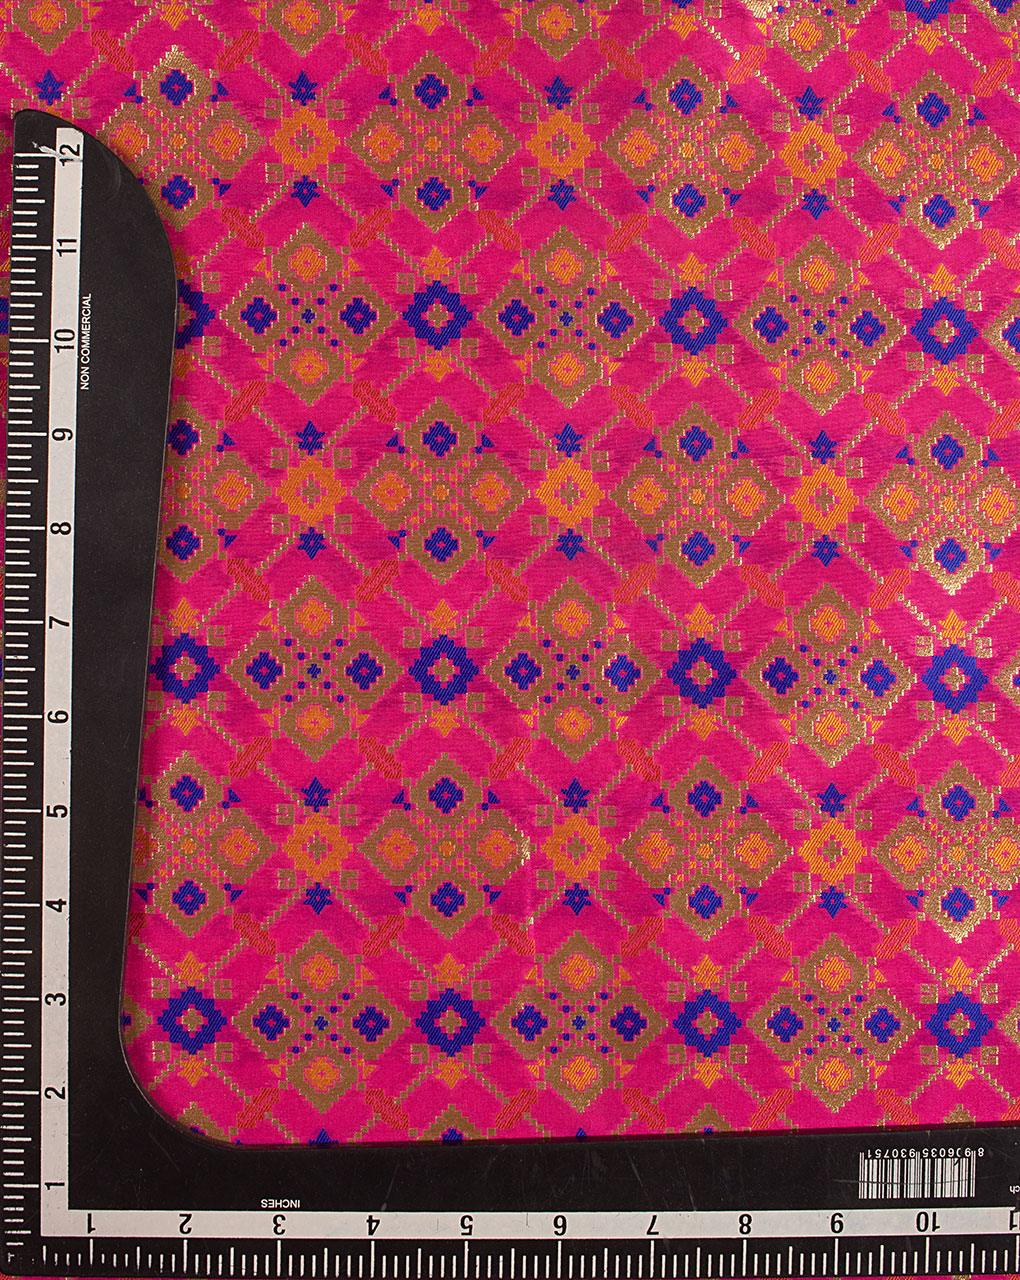 Zari Jacquard Banarasi Kataan Silk Fabric - Fabriclore.com